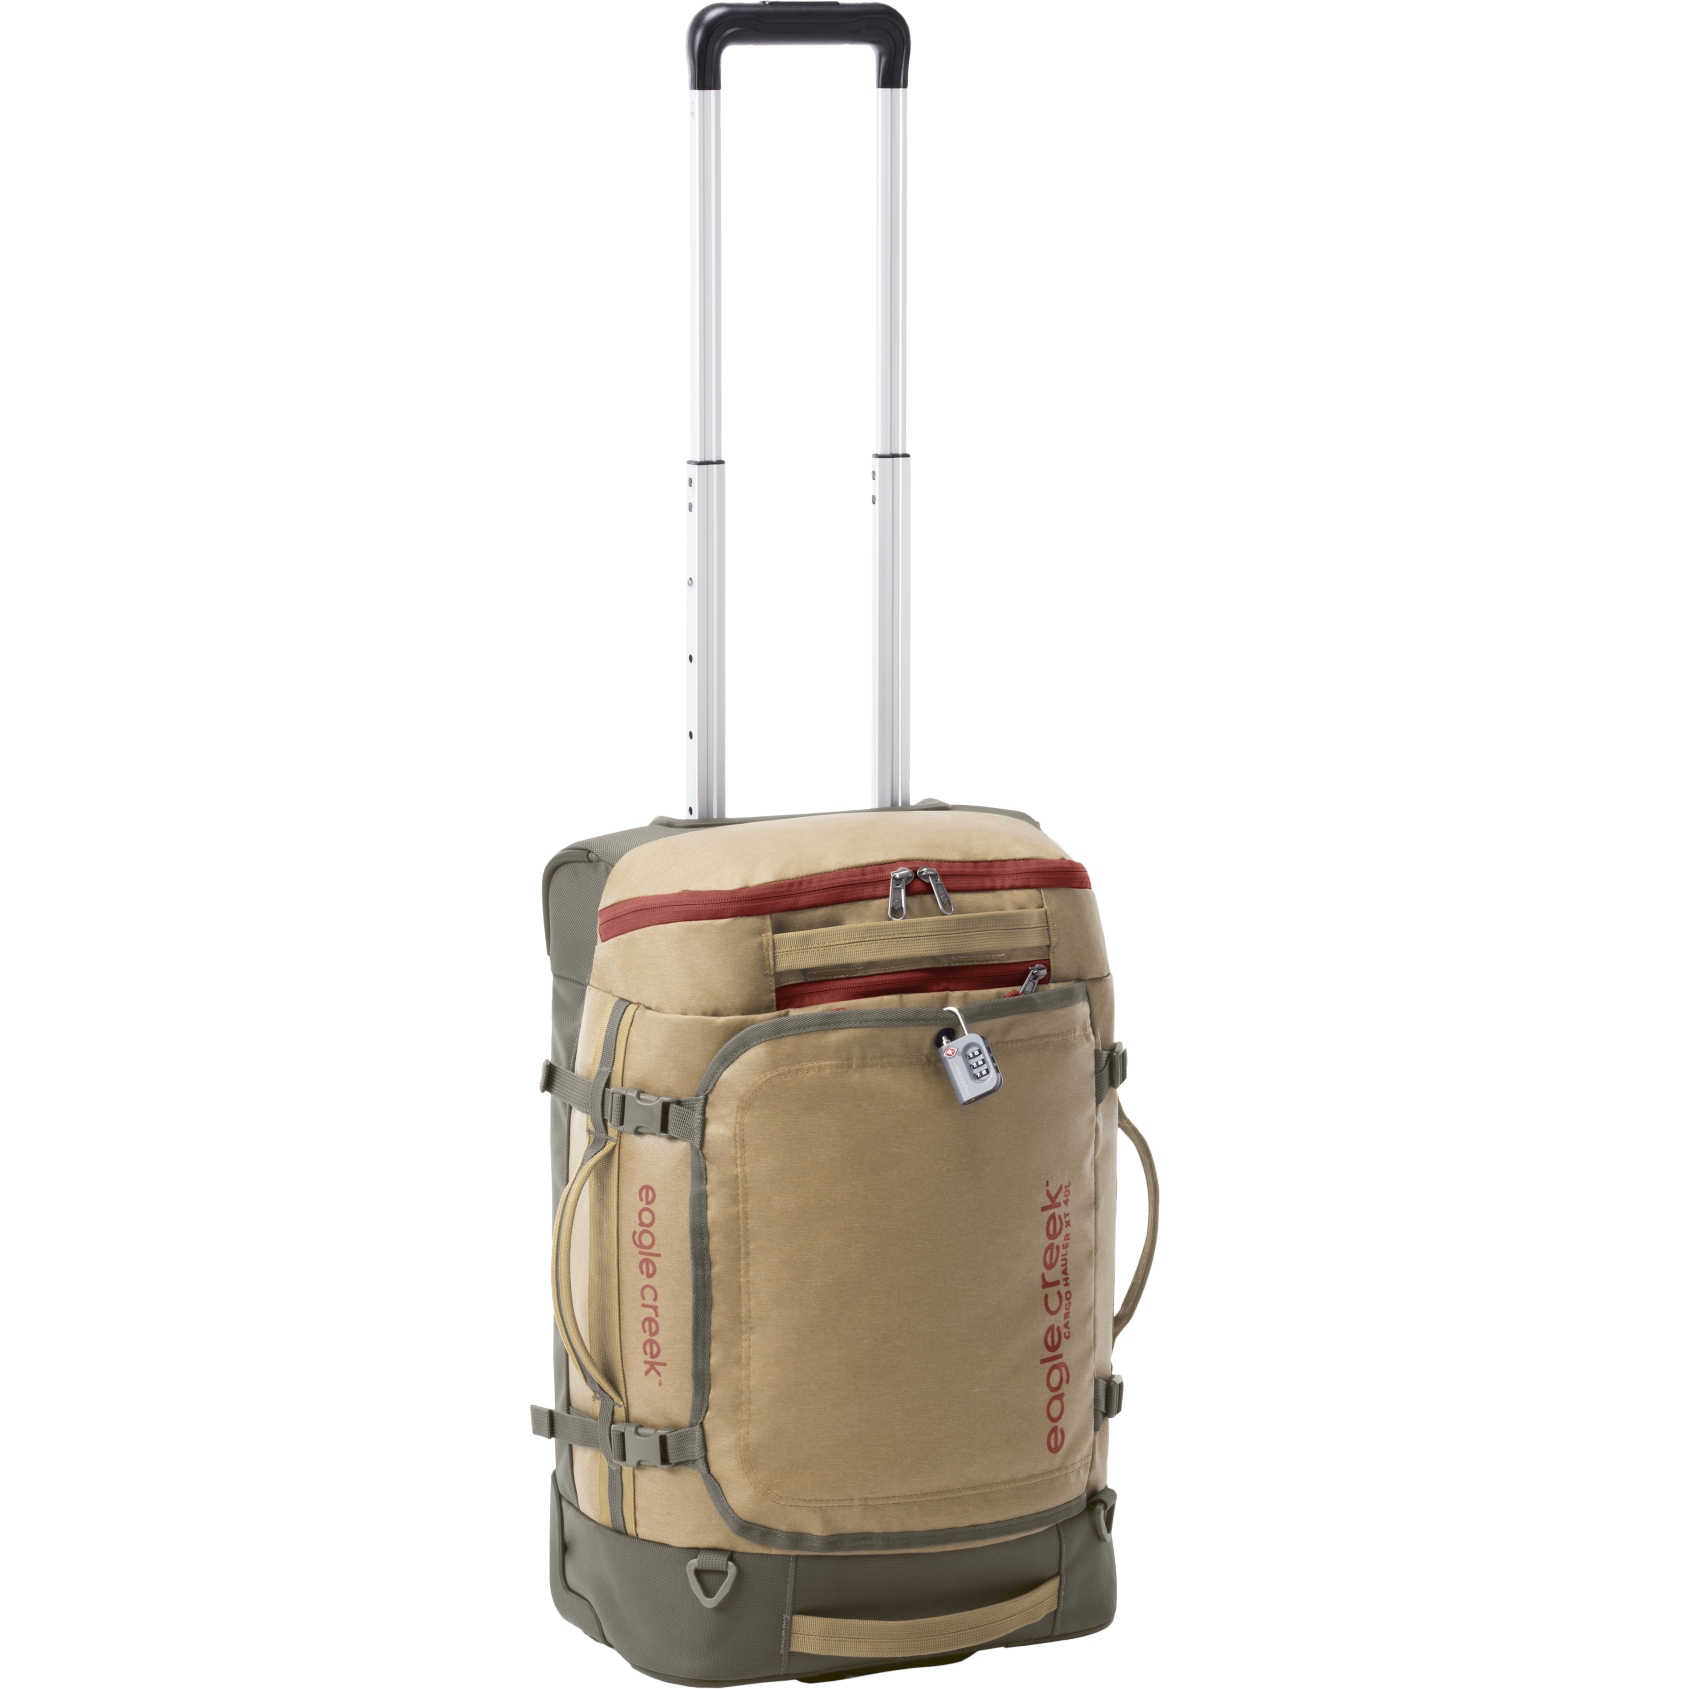 Produktbild von Eagle Creek Cargo Hauler XT International Carry On Reisetasche mit Rollen - 36L - safari brown